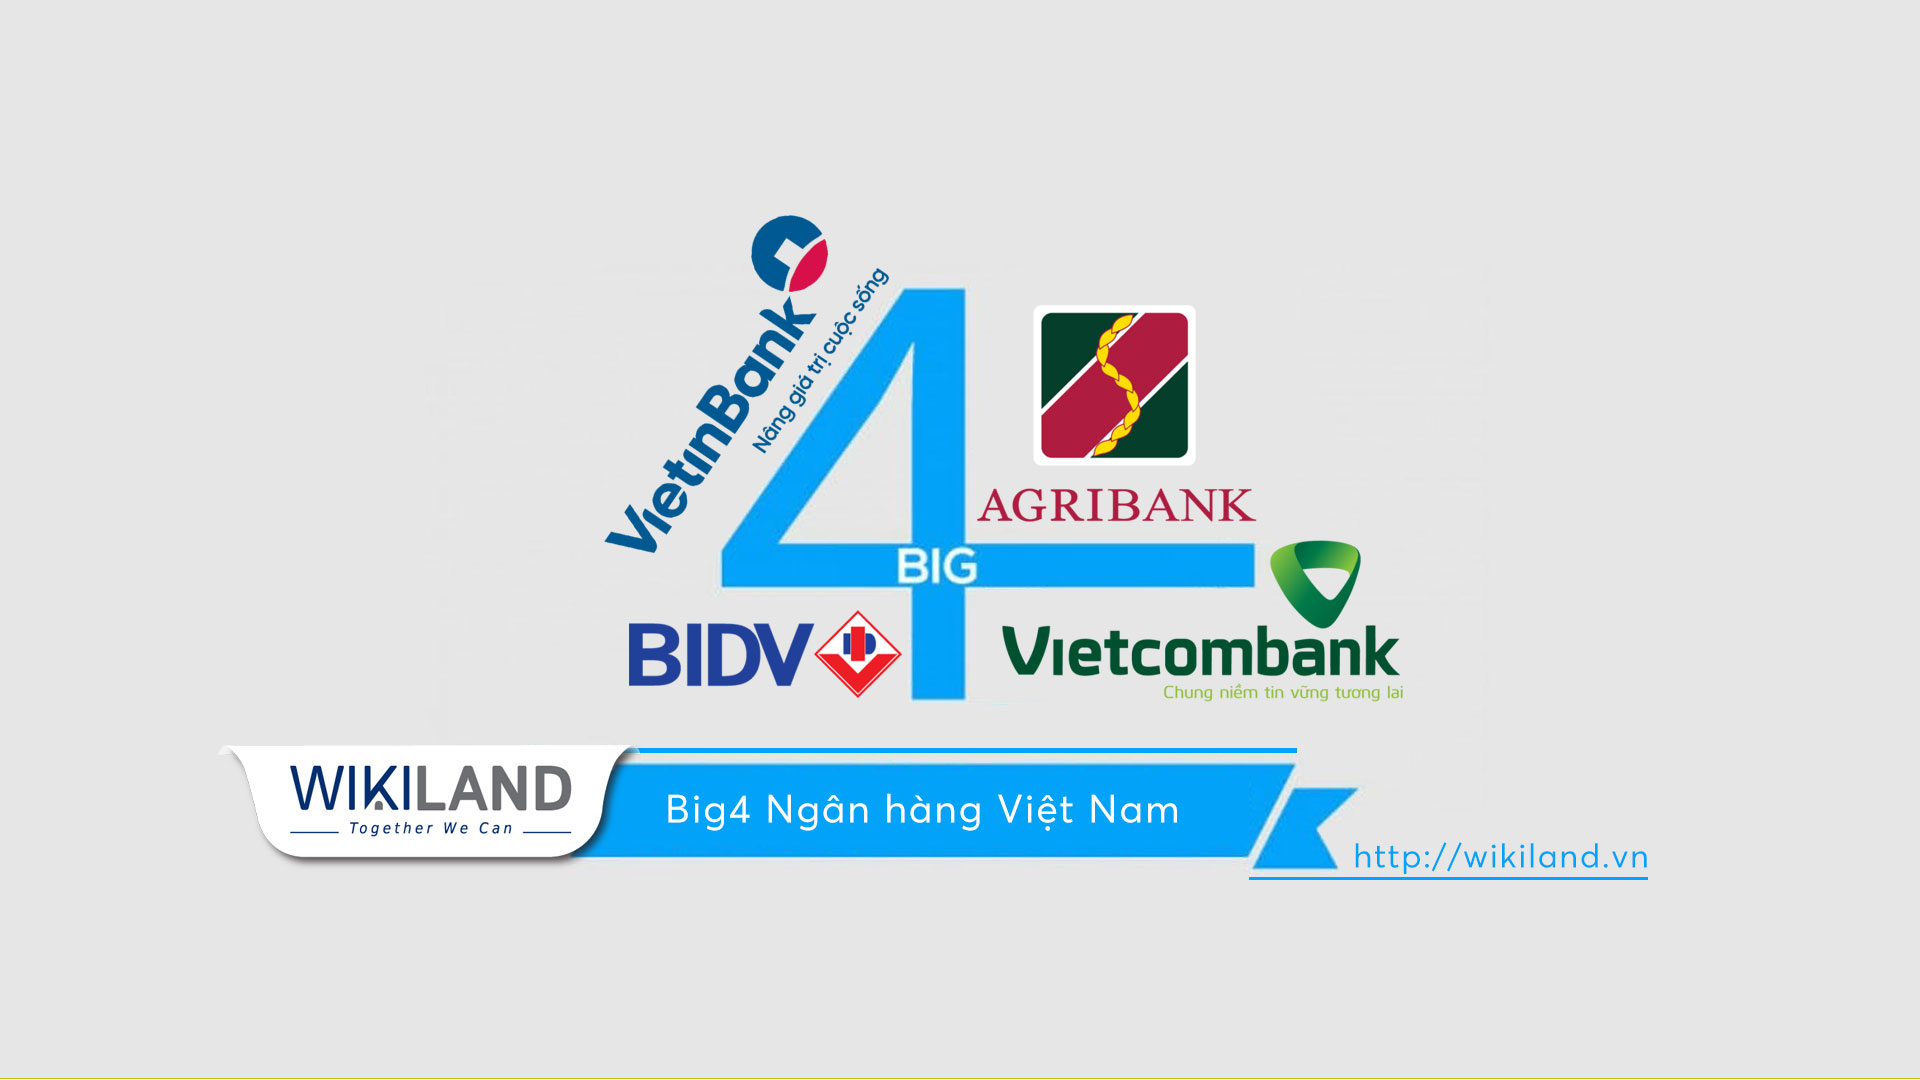 Big 4 Ngân hàng Việt Nam